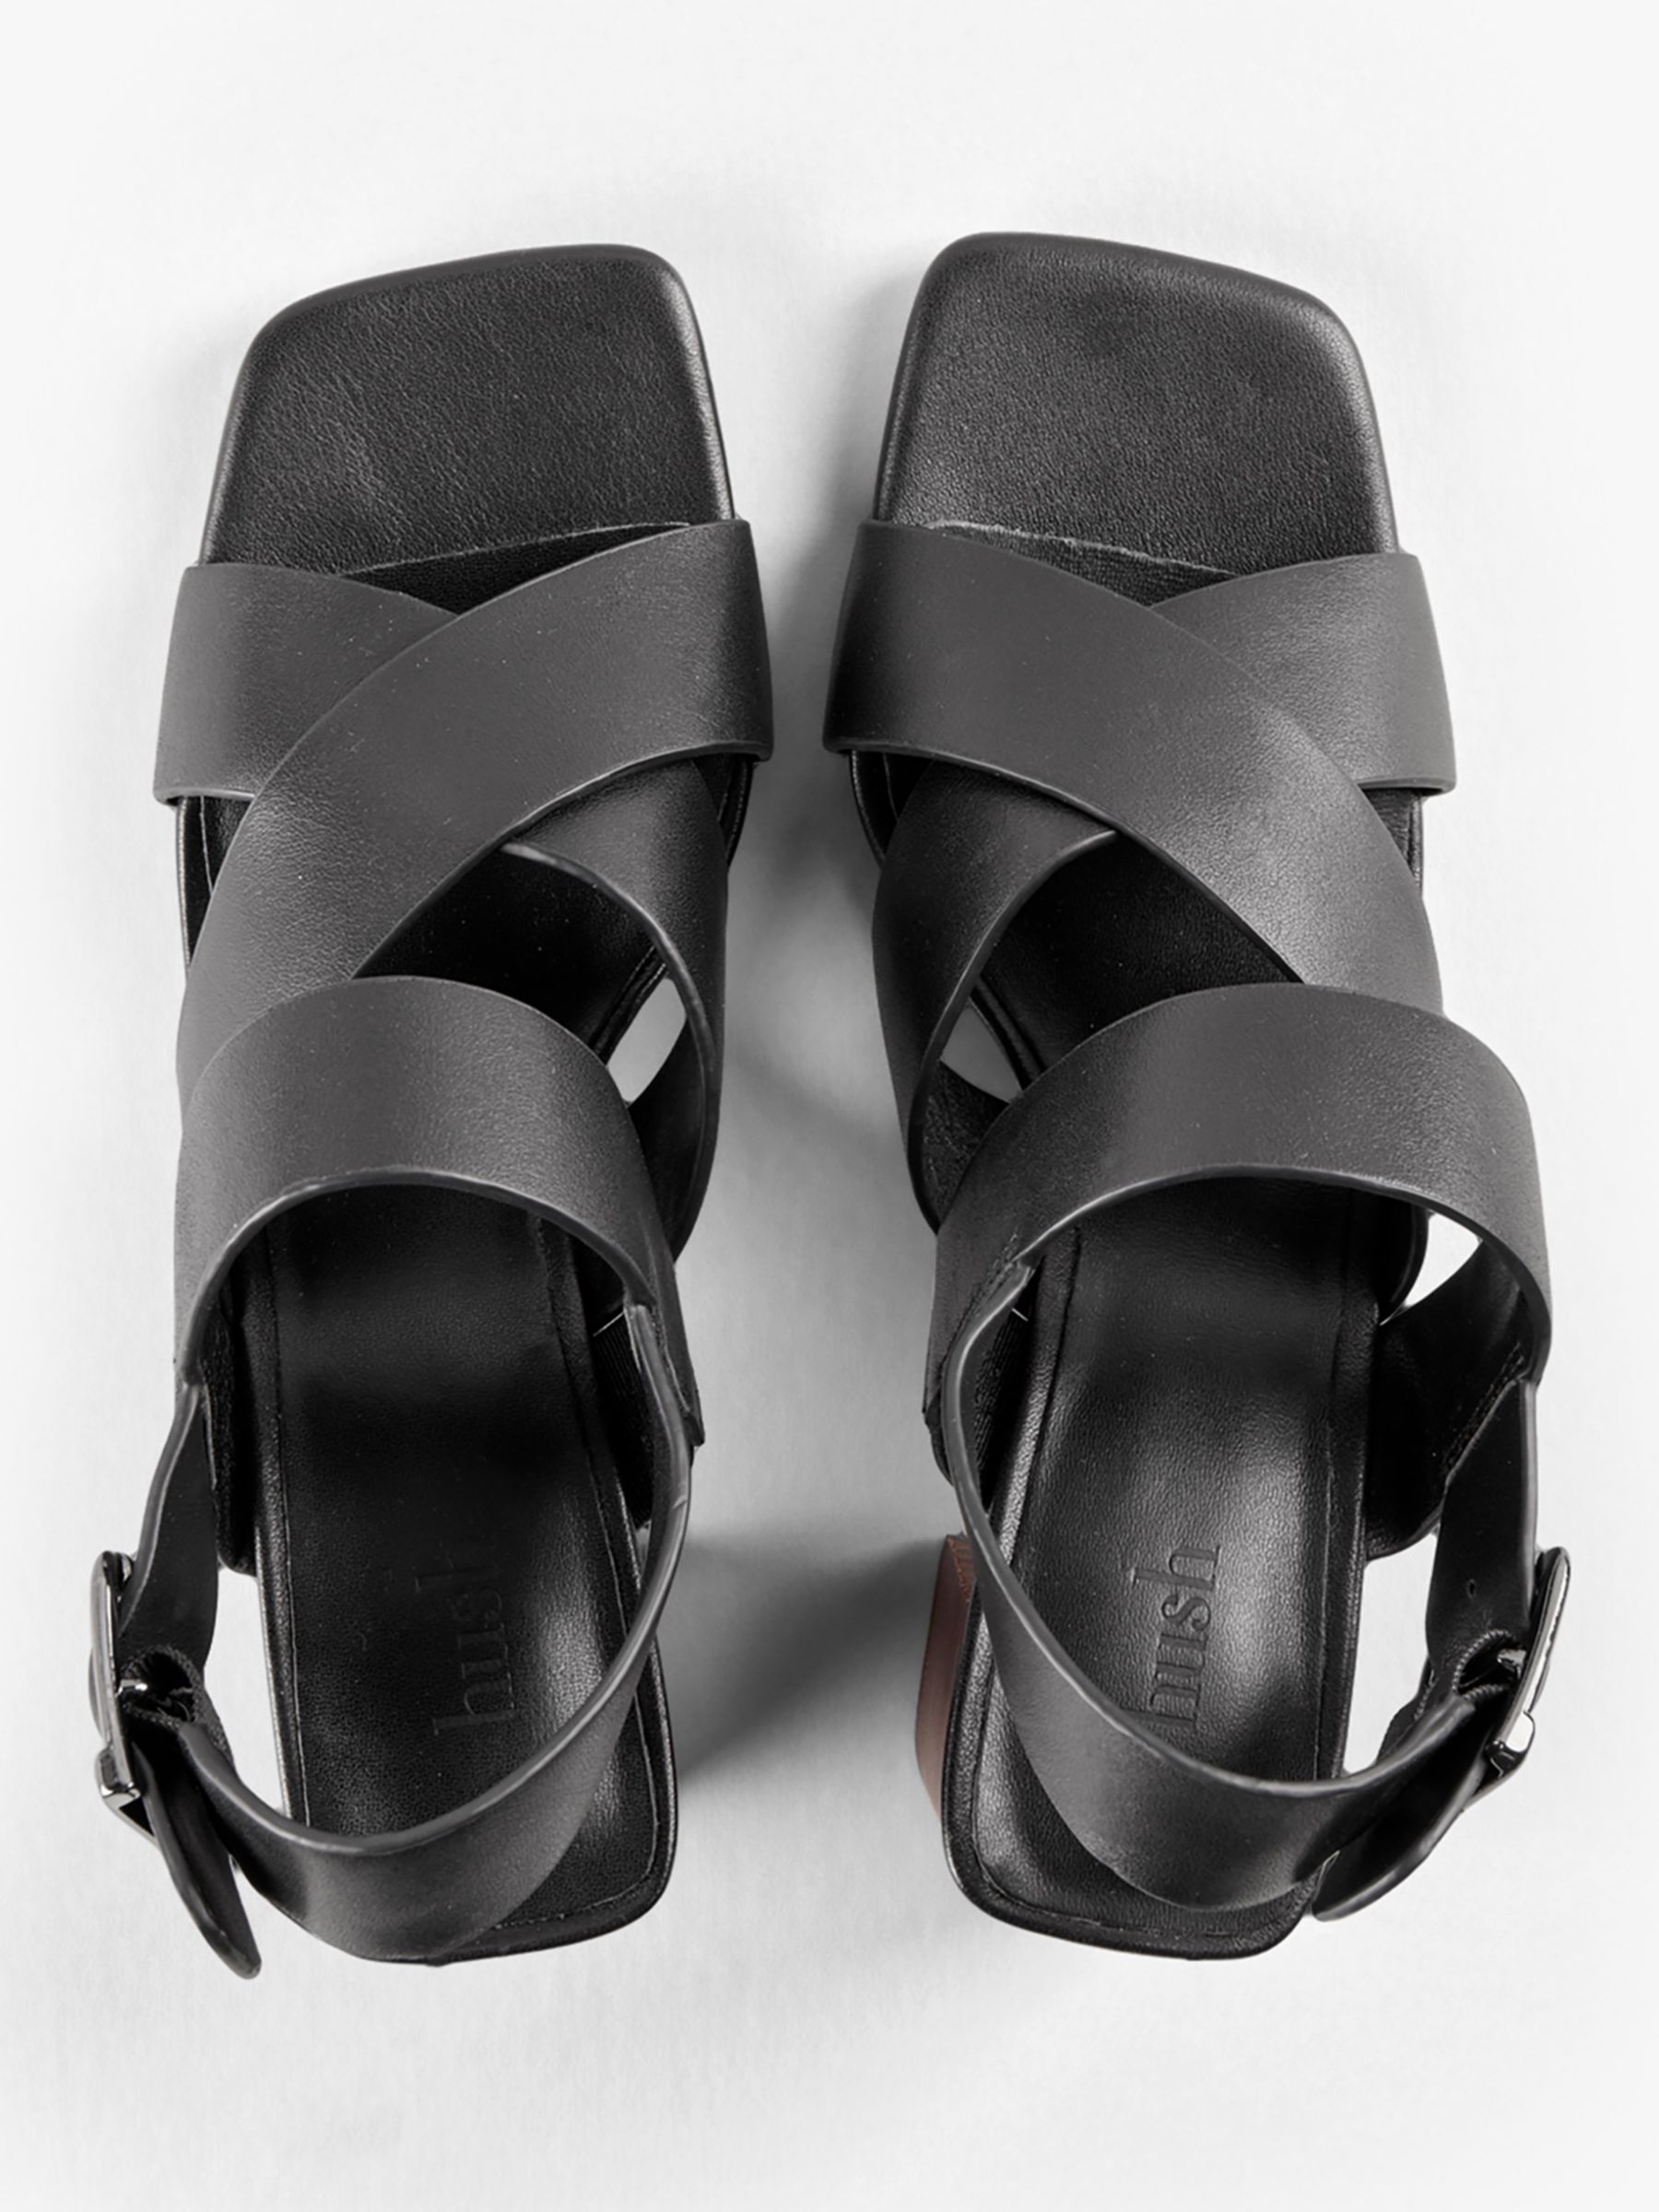 Buy HUSH Ellery Heeled Leather Sandals, Black Online at johnlewis.com